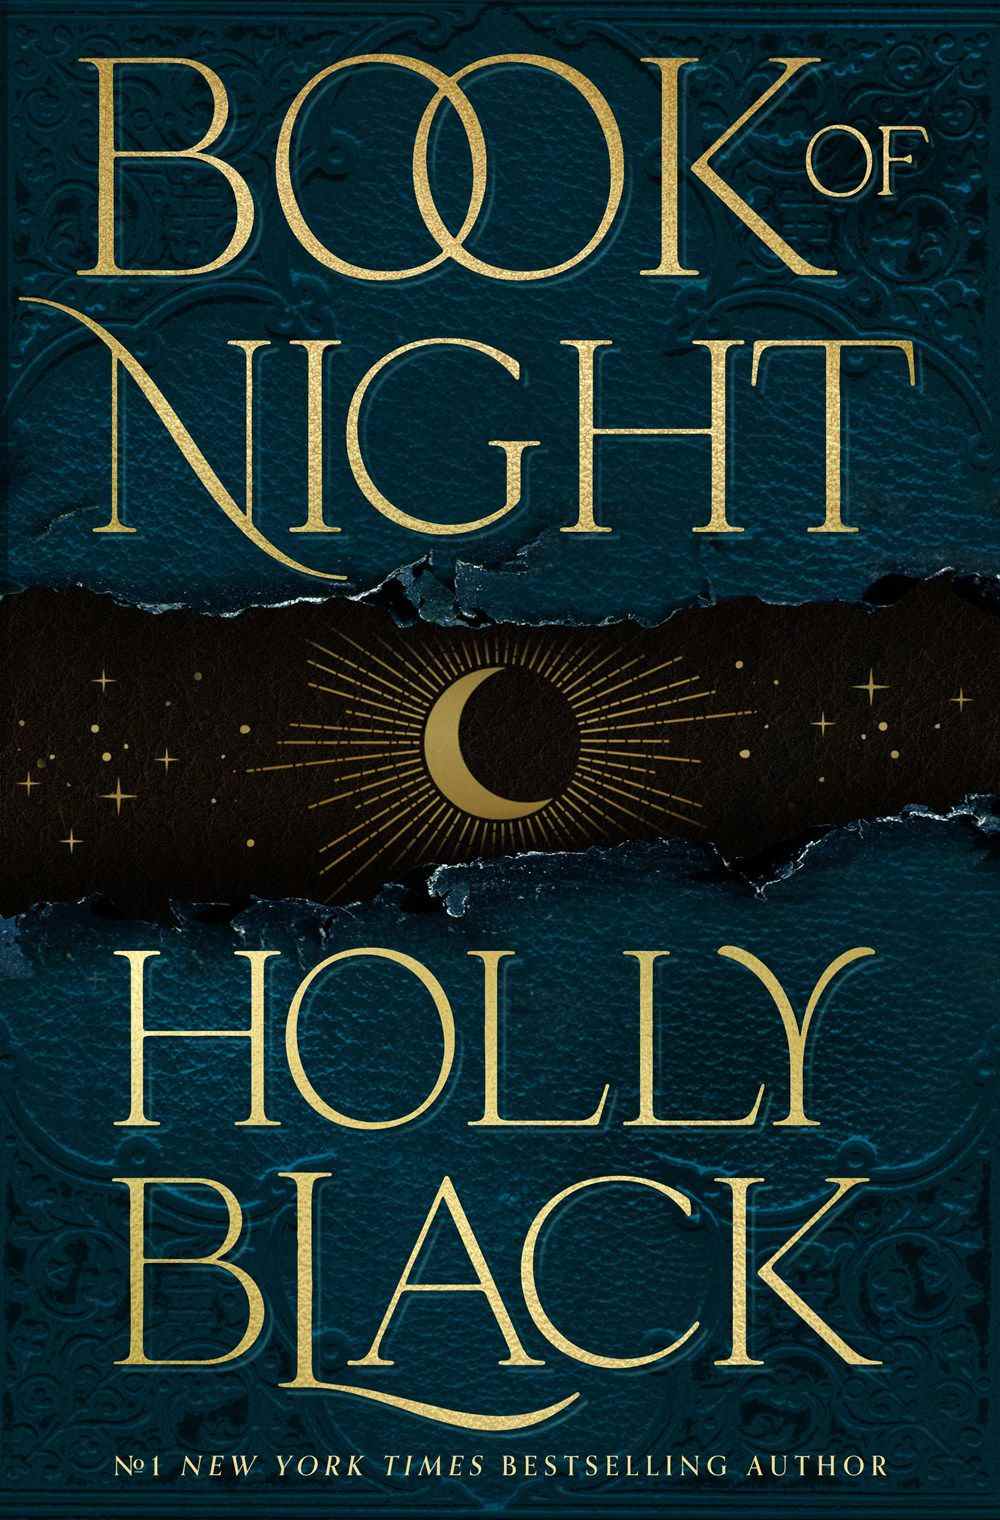 La couverture de Book of Night de Holly Black, avec une demi-lune sur un fond noir et bleu.